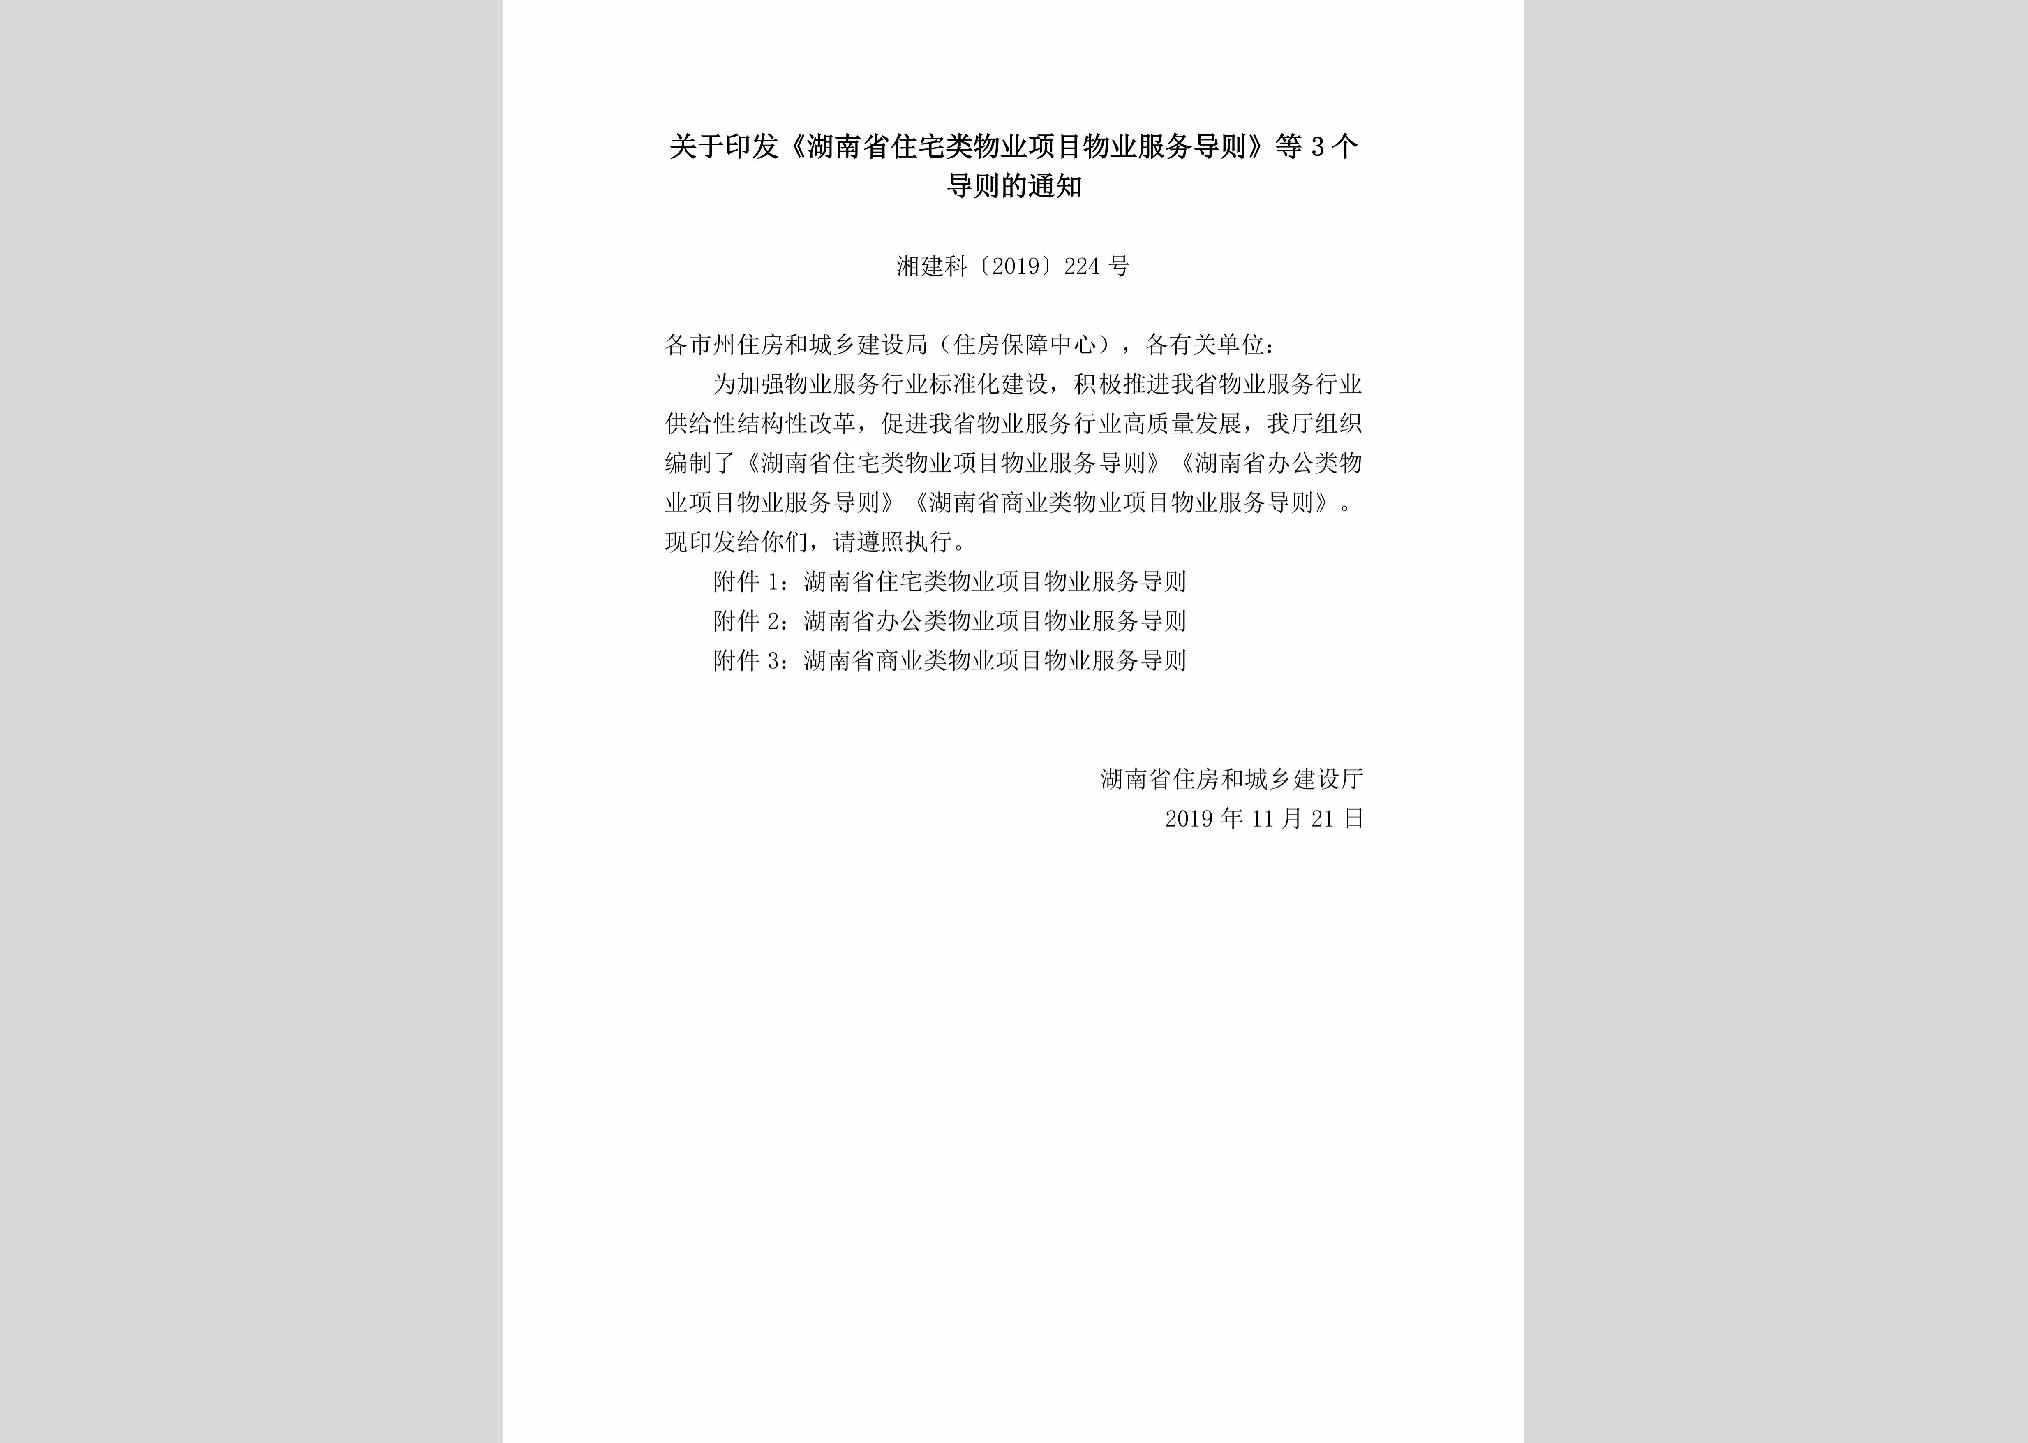 湘建科[2019]224号：关于印发《湖南省住宅类物业项目物业服务导则》等3个导则的通知